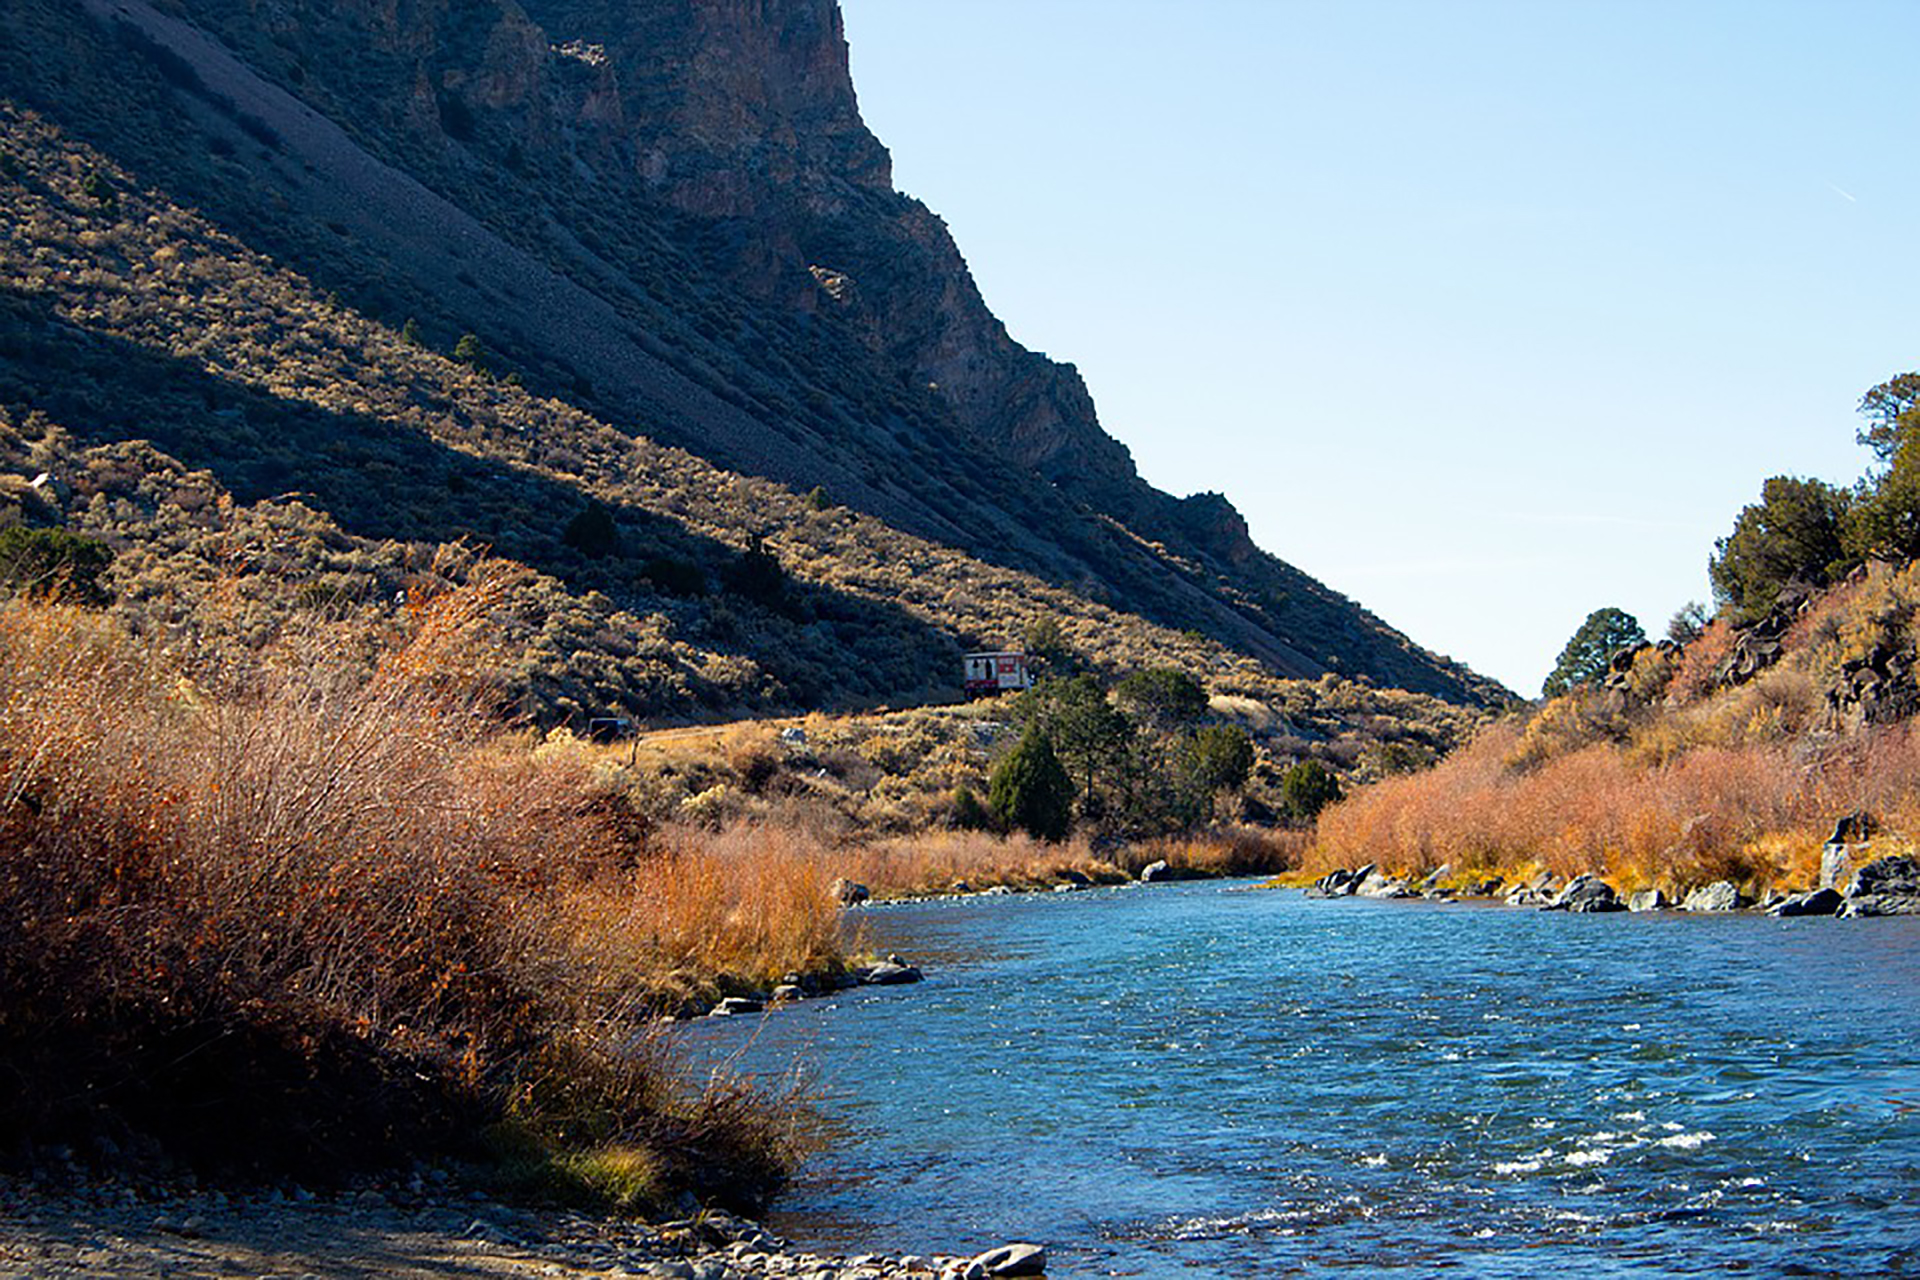 Manantiales con minerales naturales llenos de propiedades saludables es lo que ofrece el Ojo Caliente de Taos, uno de los balnearios más antiguos de Estados Unidos
